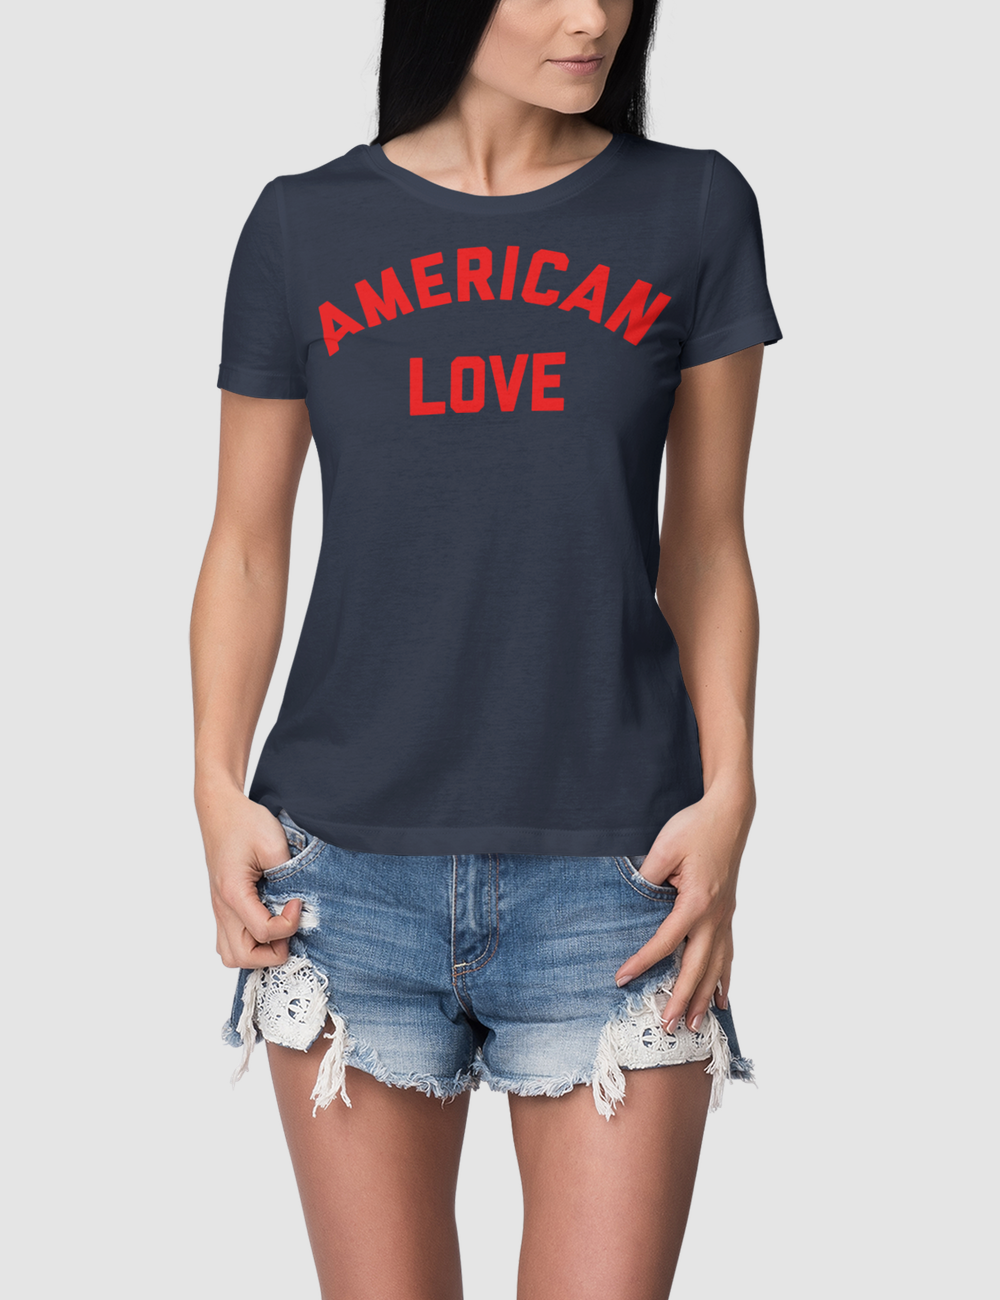 American Love | Women's Fitted T-Shirt OniTakai